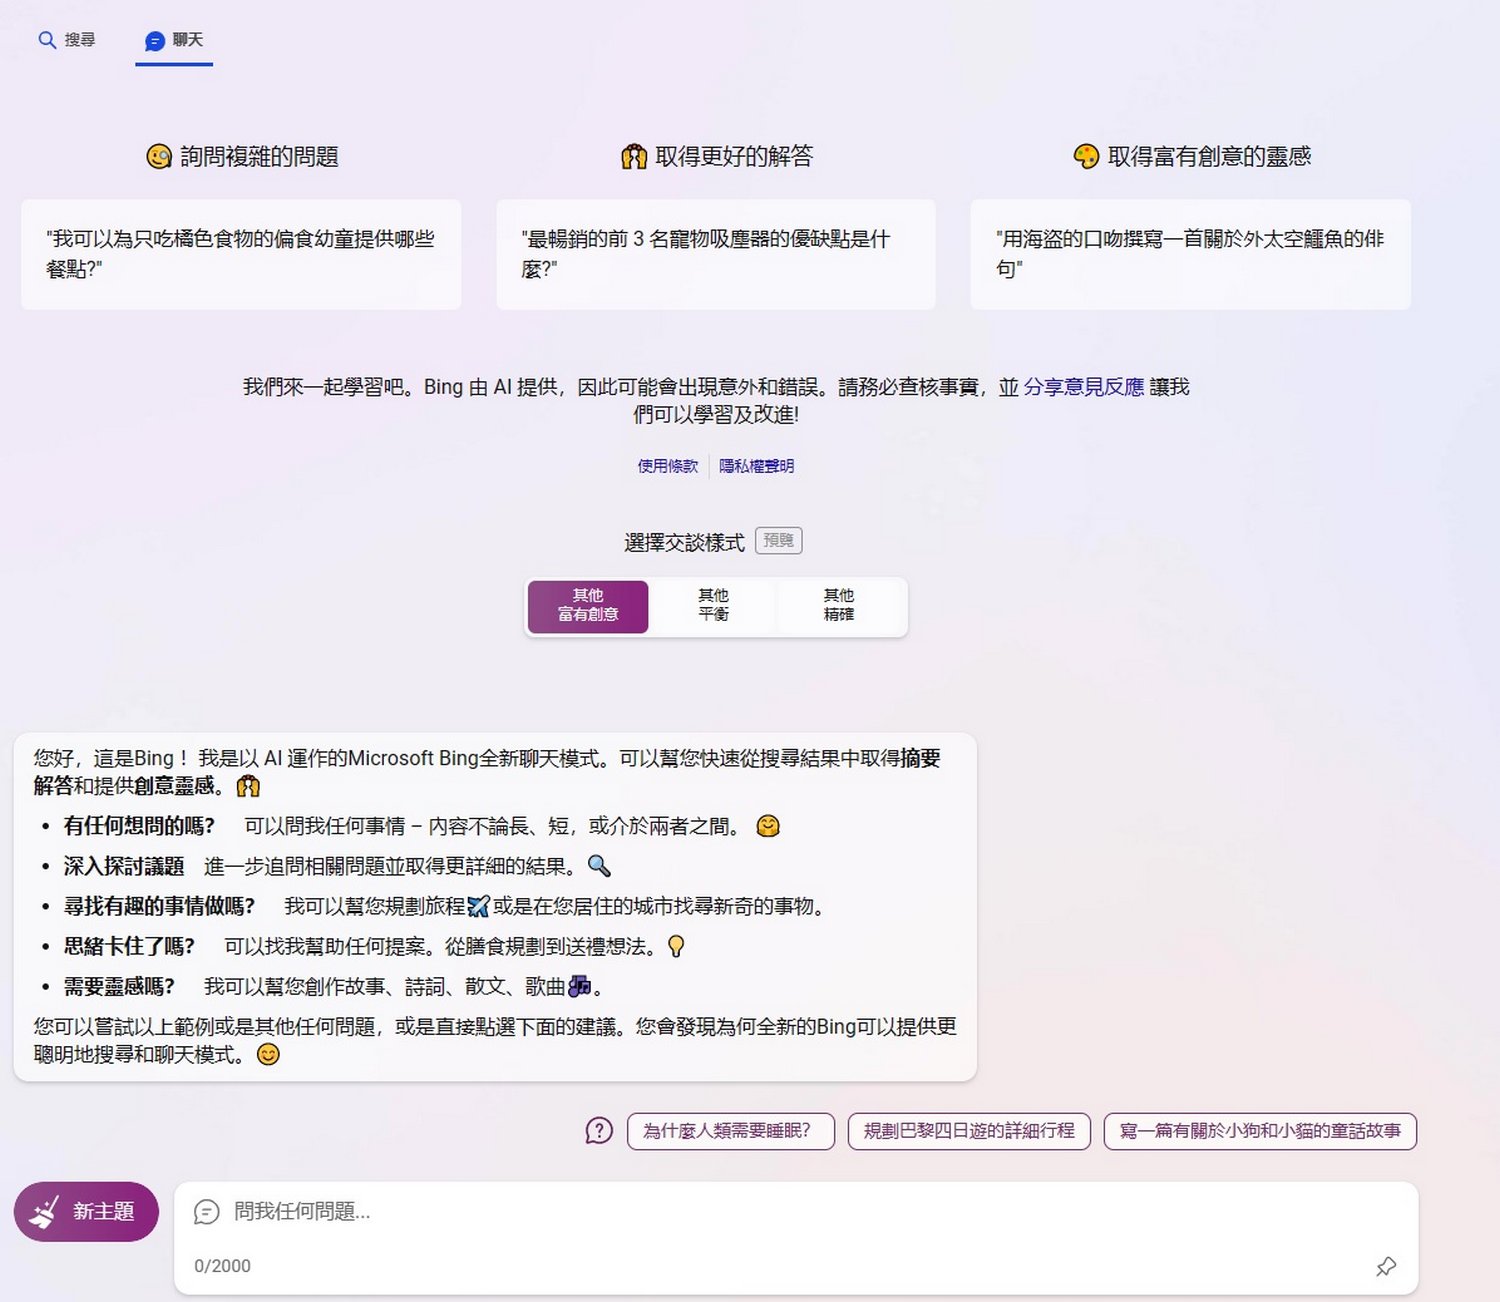 Bing AI 已經支援畫圖 詠唱描述支援繁體中文了